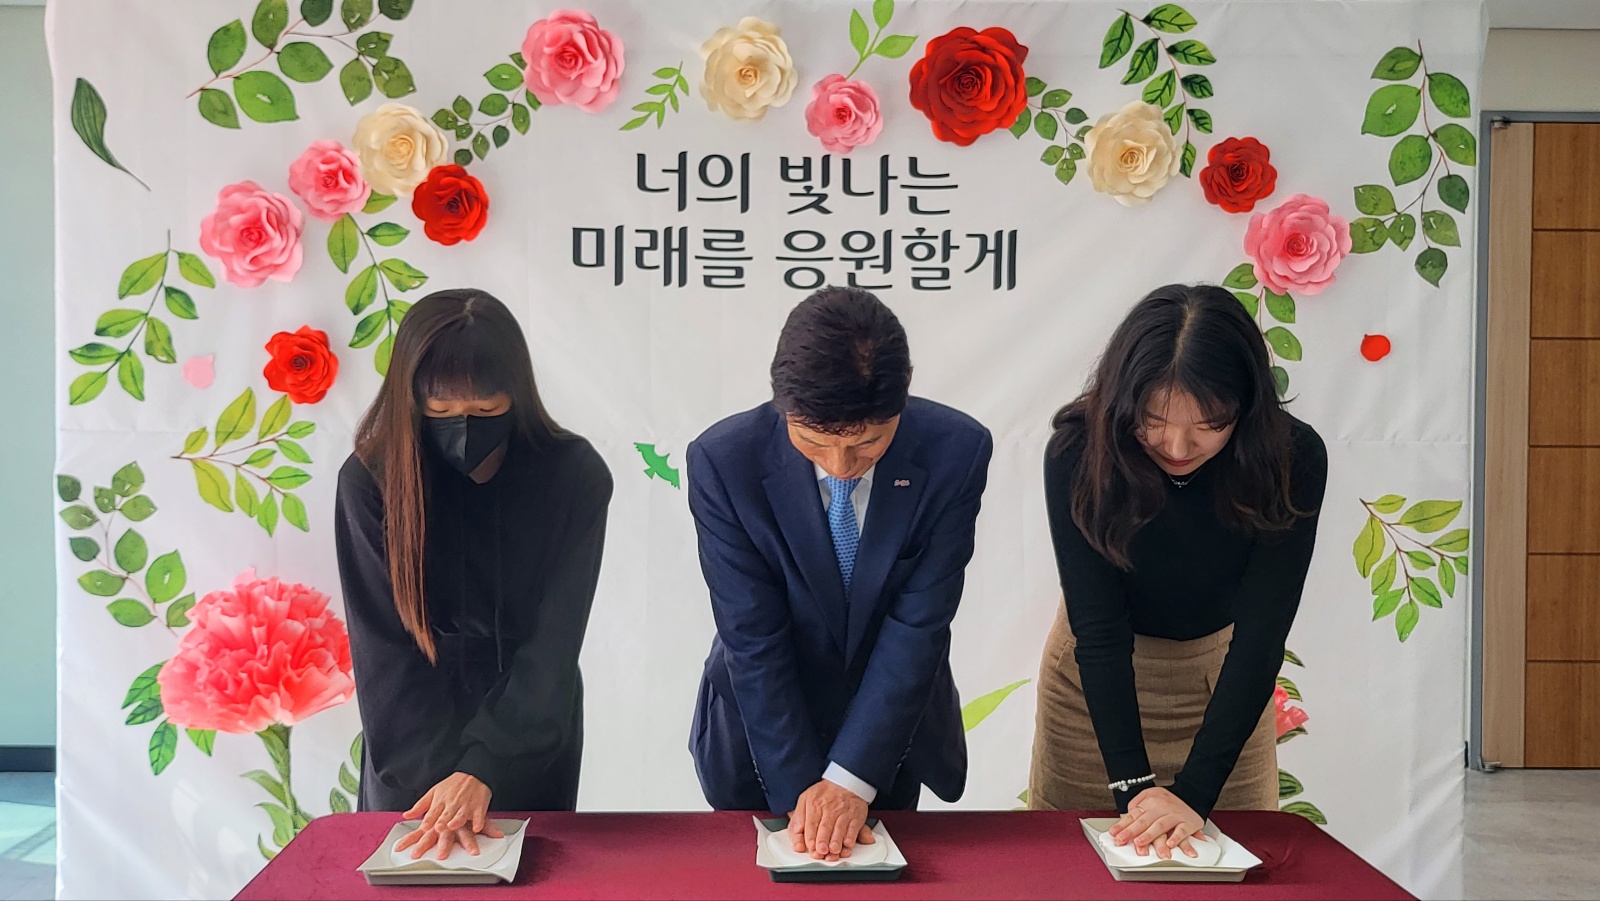 23.03.11 청소년운영위원회 및 동아리 발대식